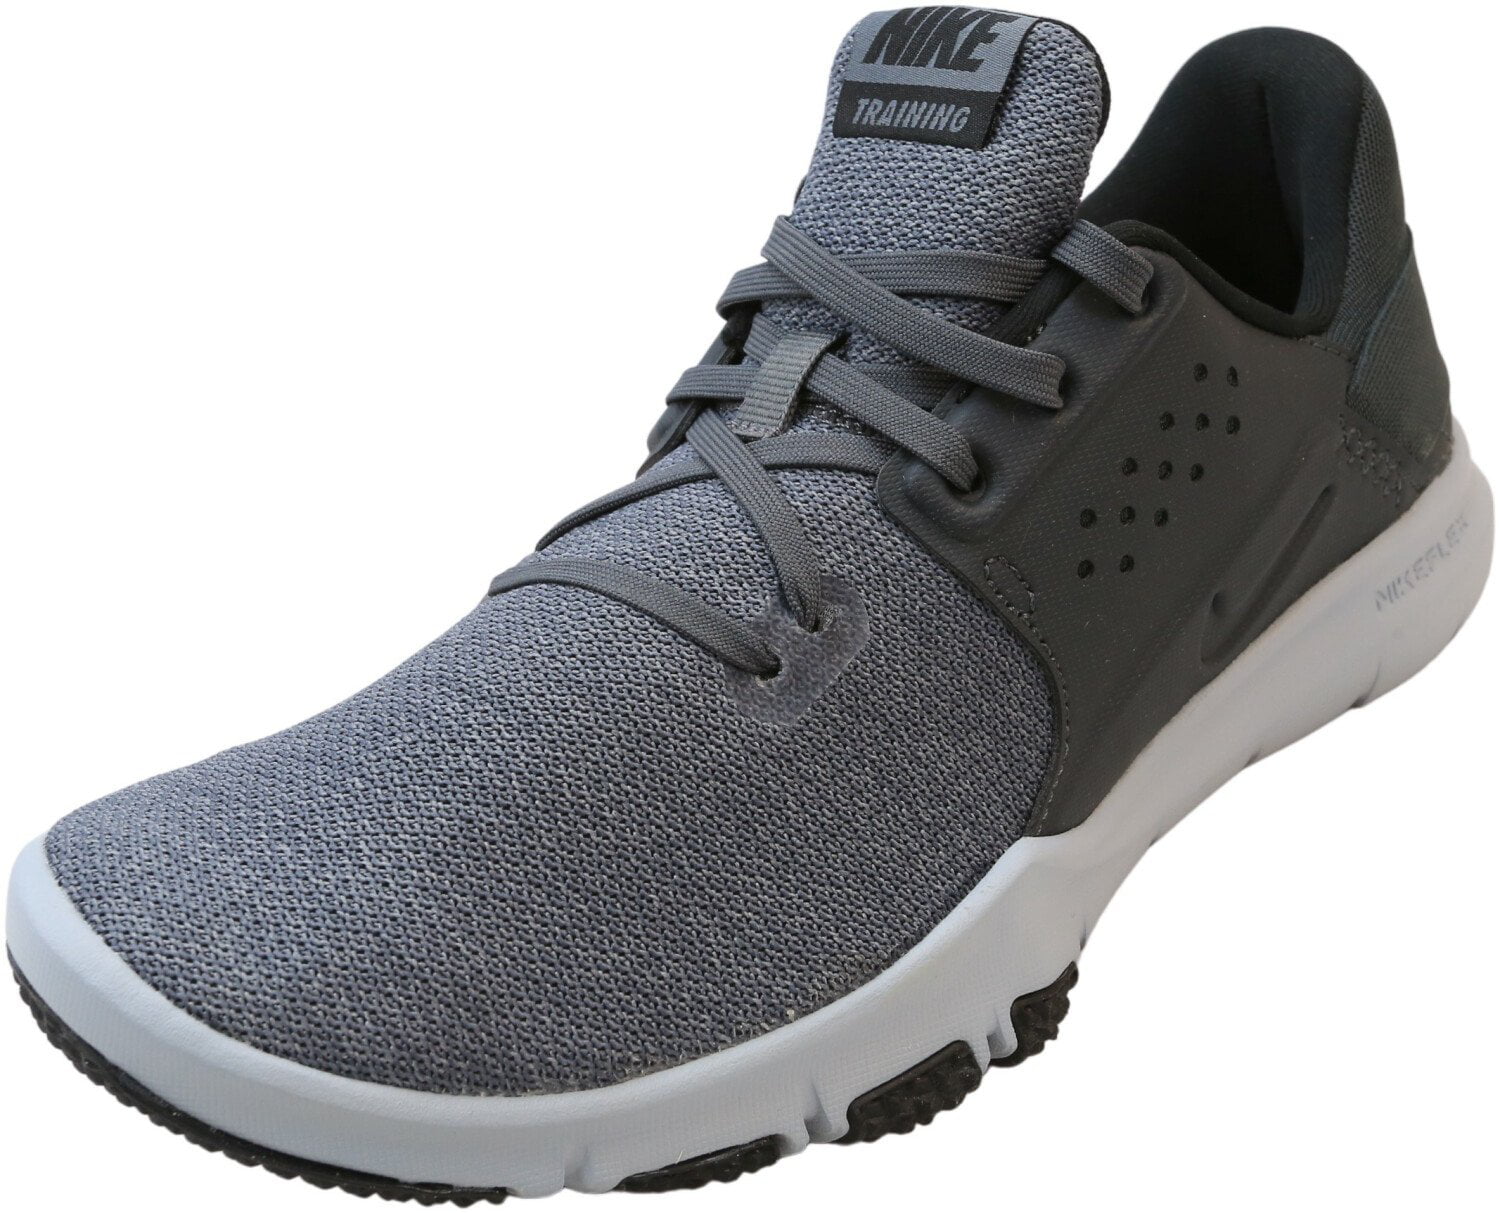 Nike Control Tr3 Anthracite / Training Shoes - 8.5WW - Walmart.com